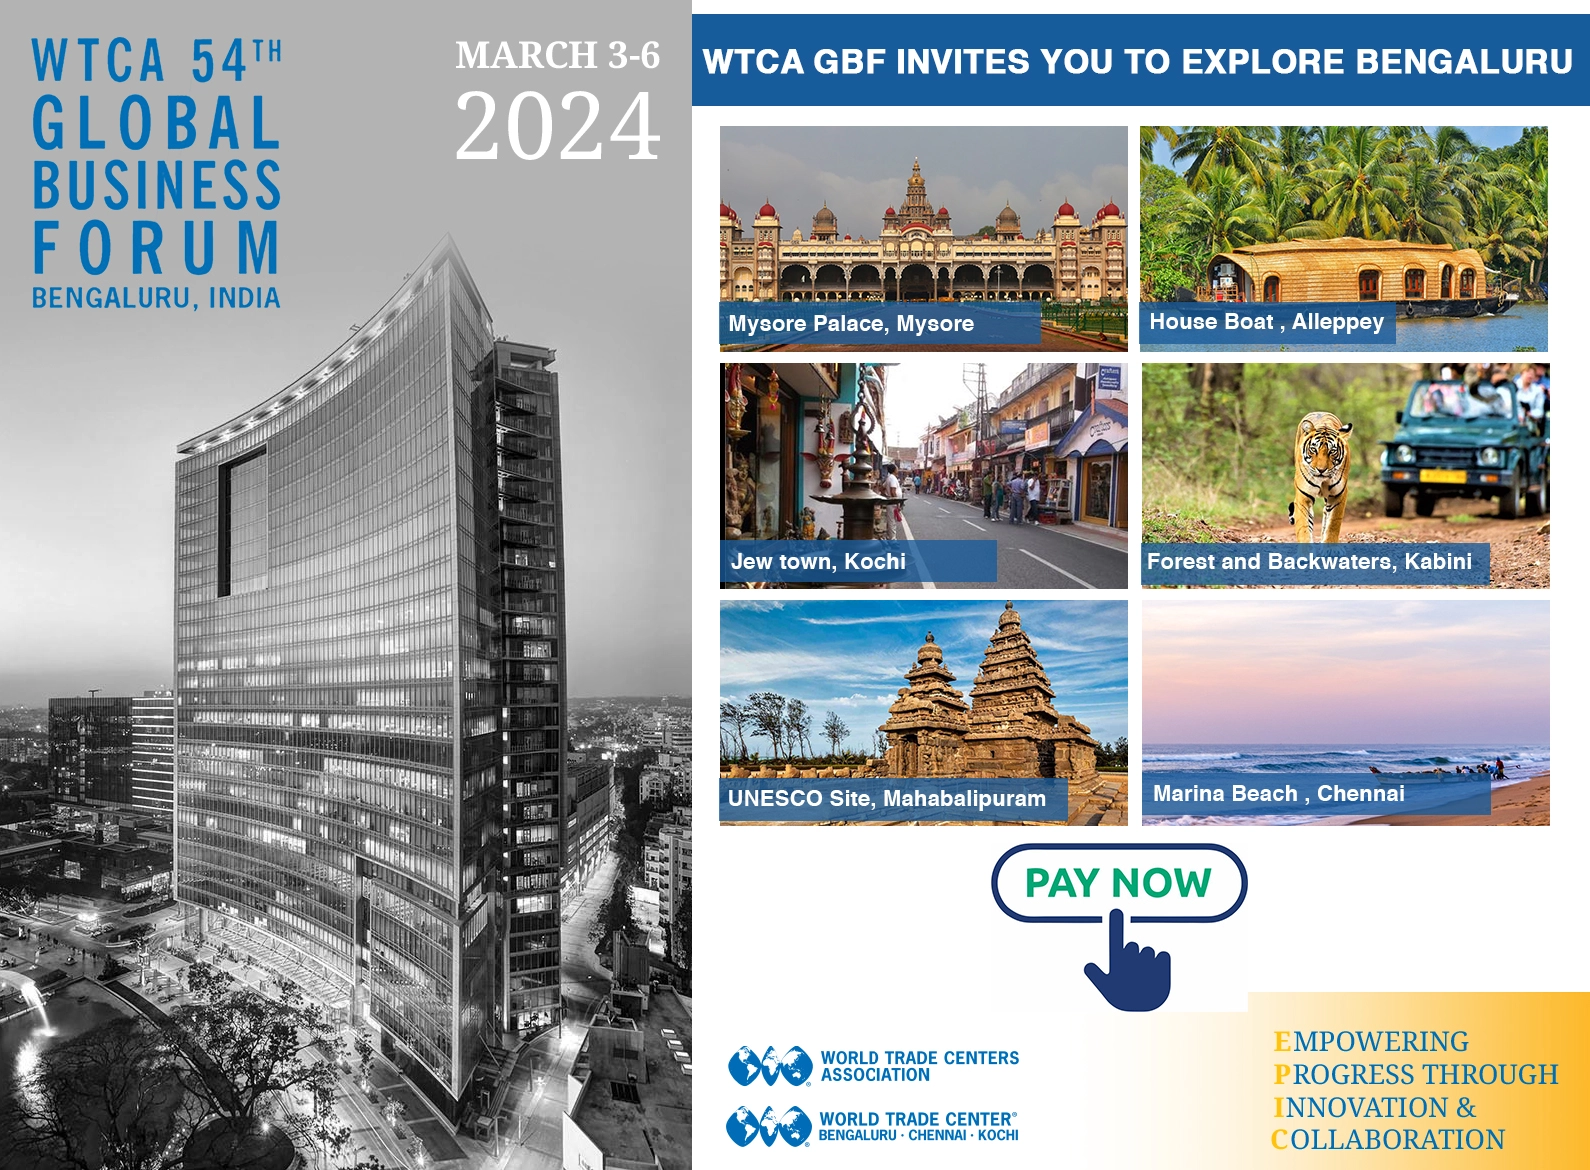 WTCA GBP invites you to explore Bengaluru